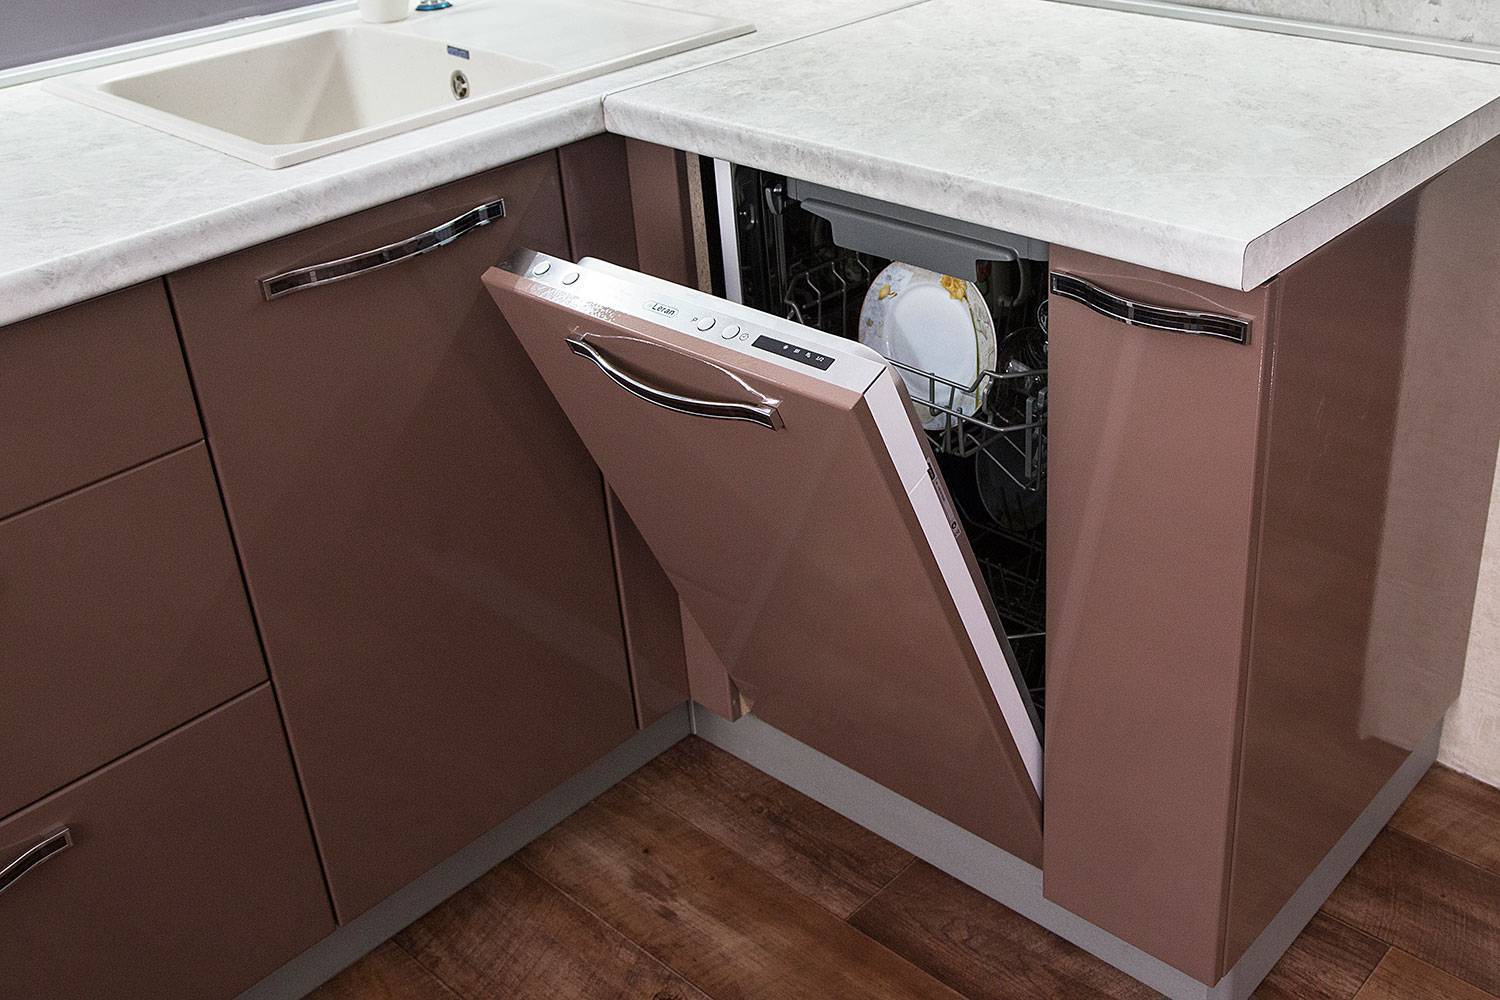 Как встроить посудомойку 45 см - особенности самостоятельного размещения, лучшие модели